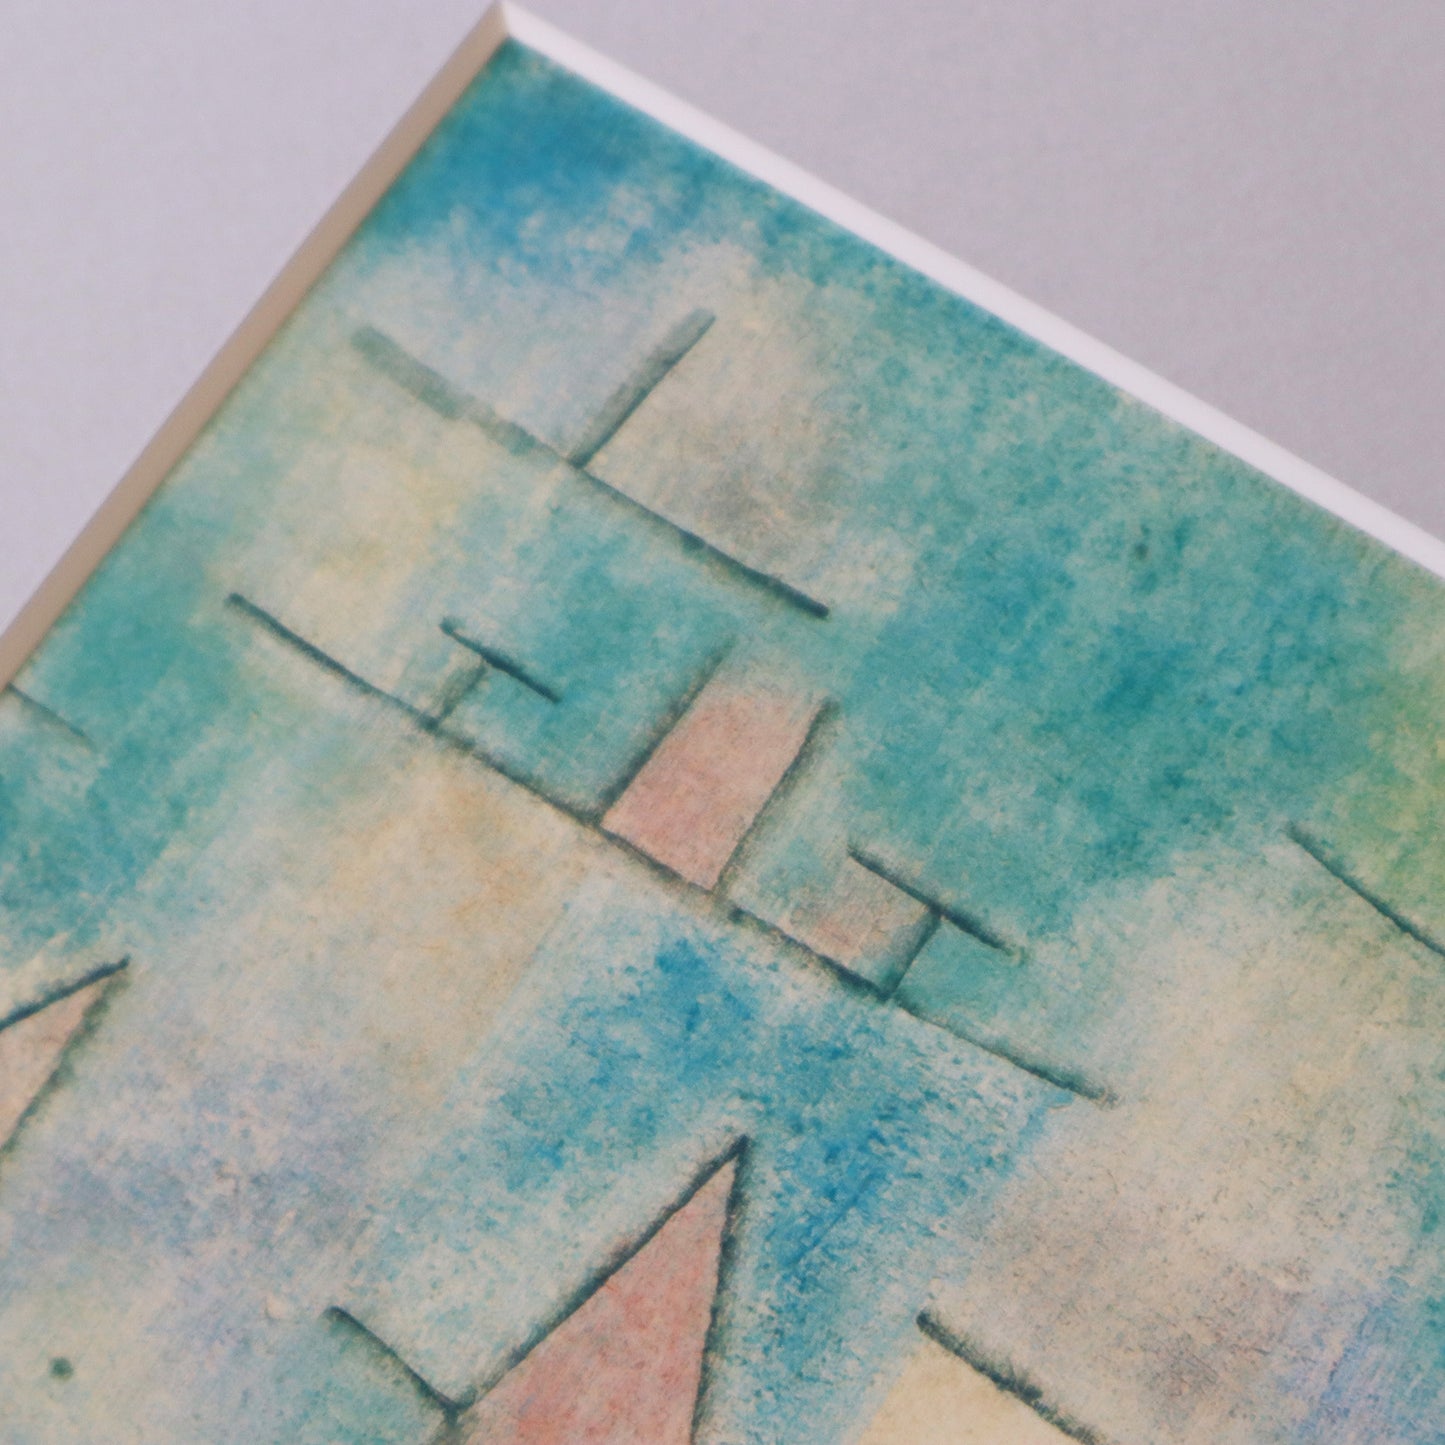 パウル・クレー「ヨットの浮かぶ港」アートポスター（フレーム付き） / Paul Klee “Harbour with sailing ships” Art Frame